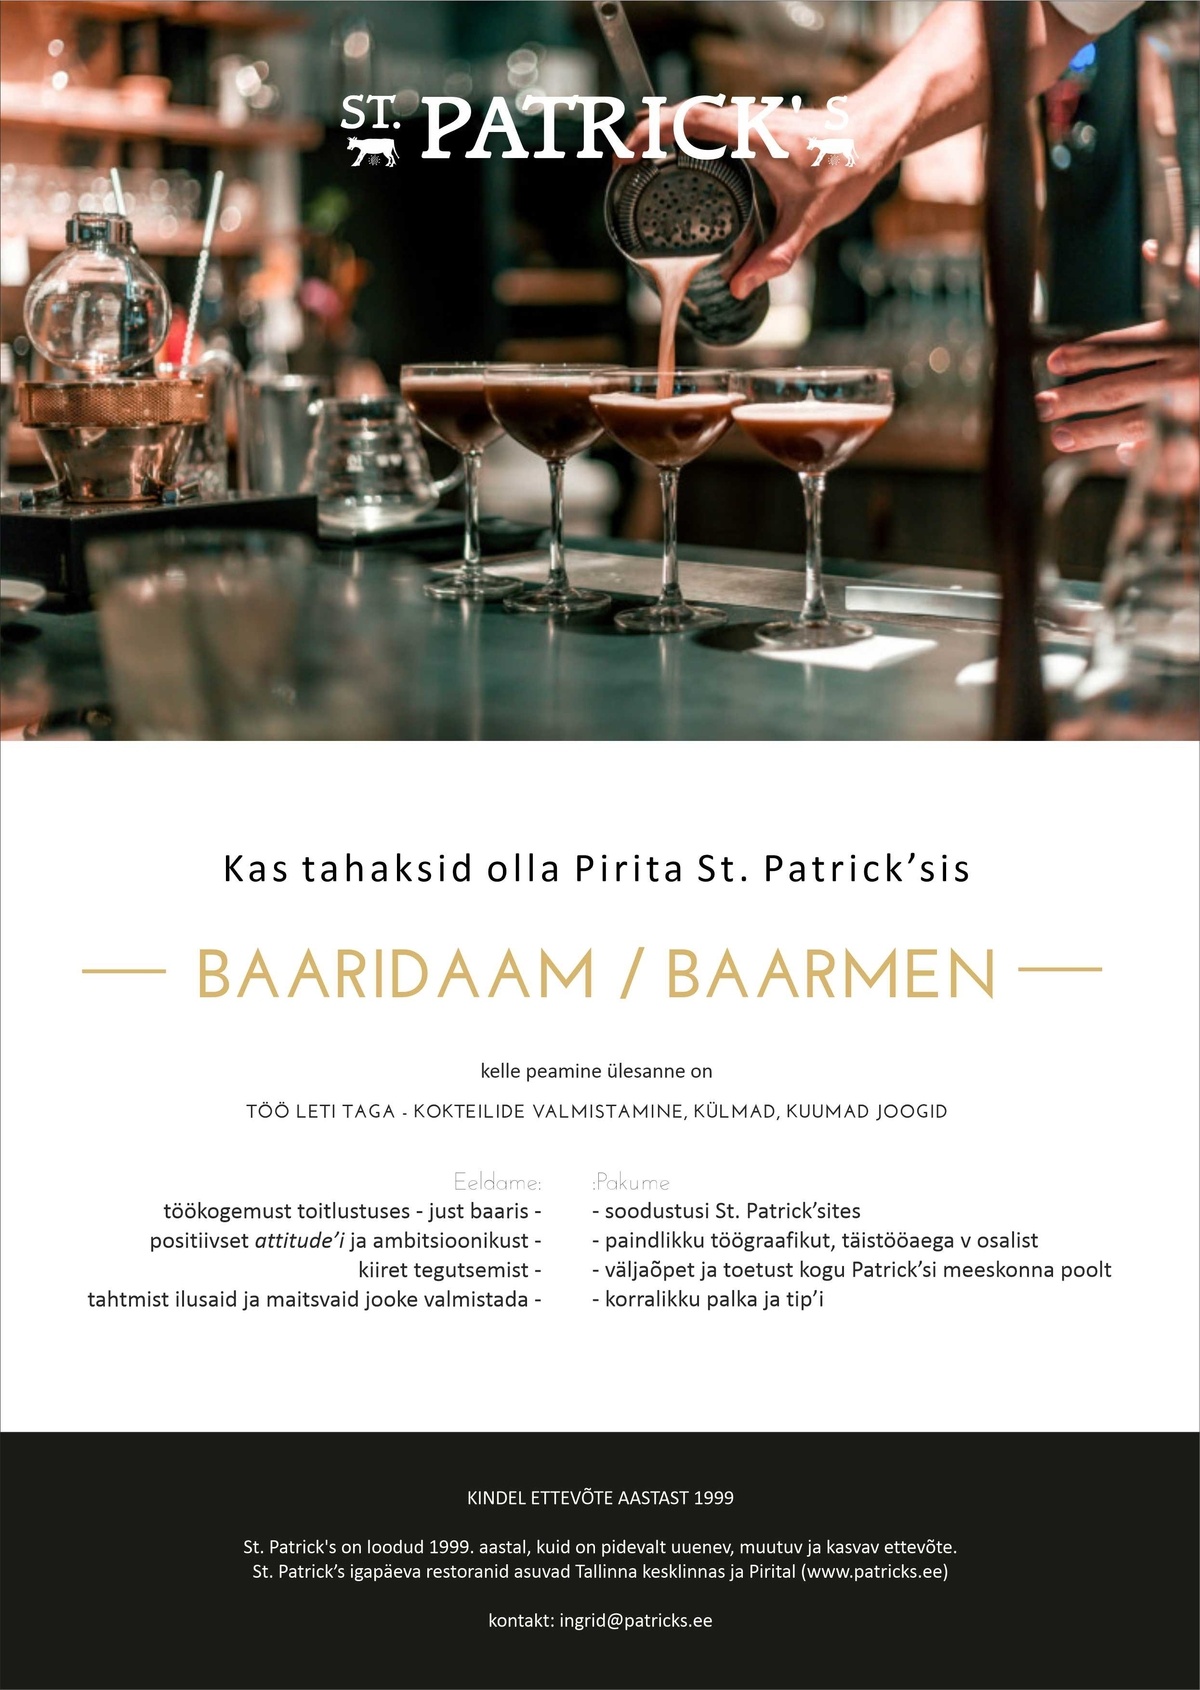 St. Patrick's OÜ Baaridaam/baarmen